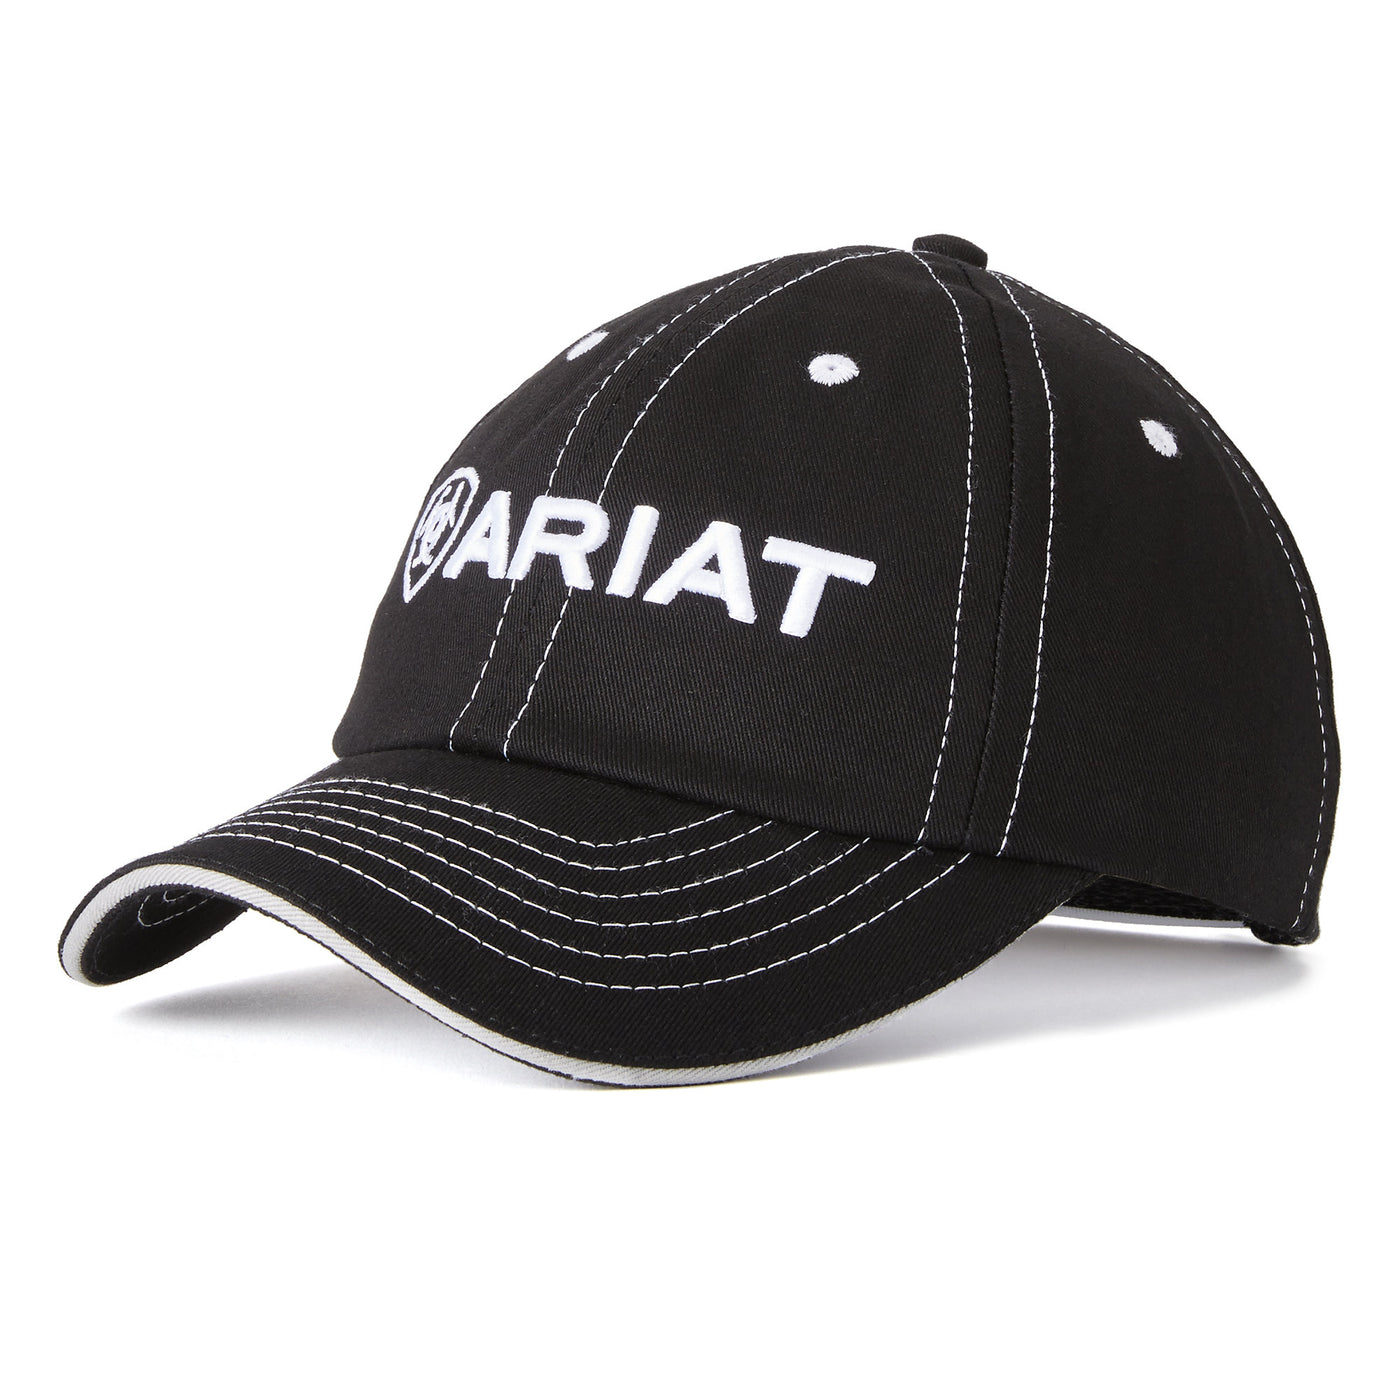 Ariat Team II Cap - Black & White